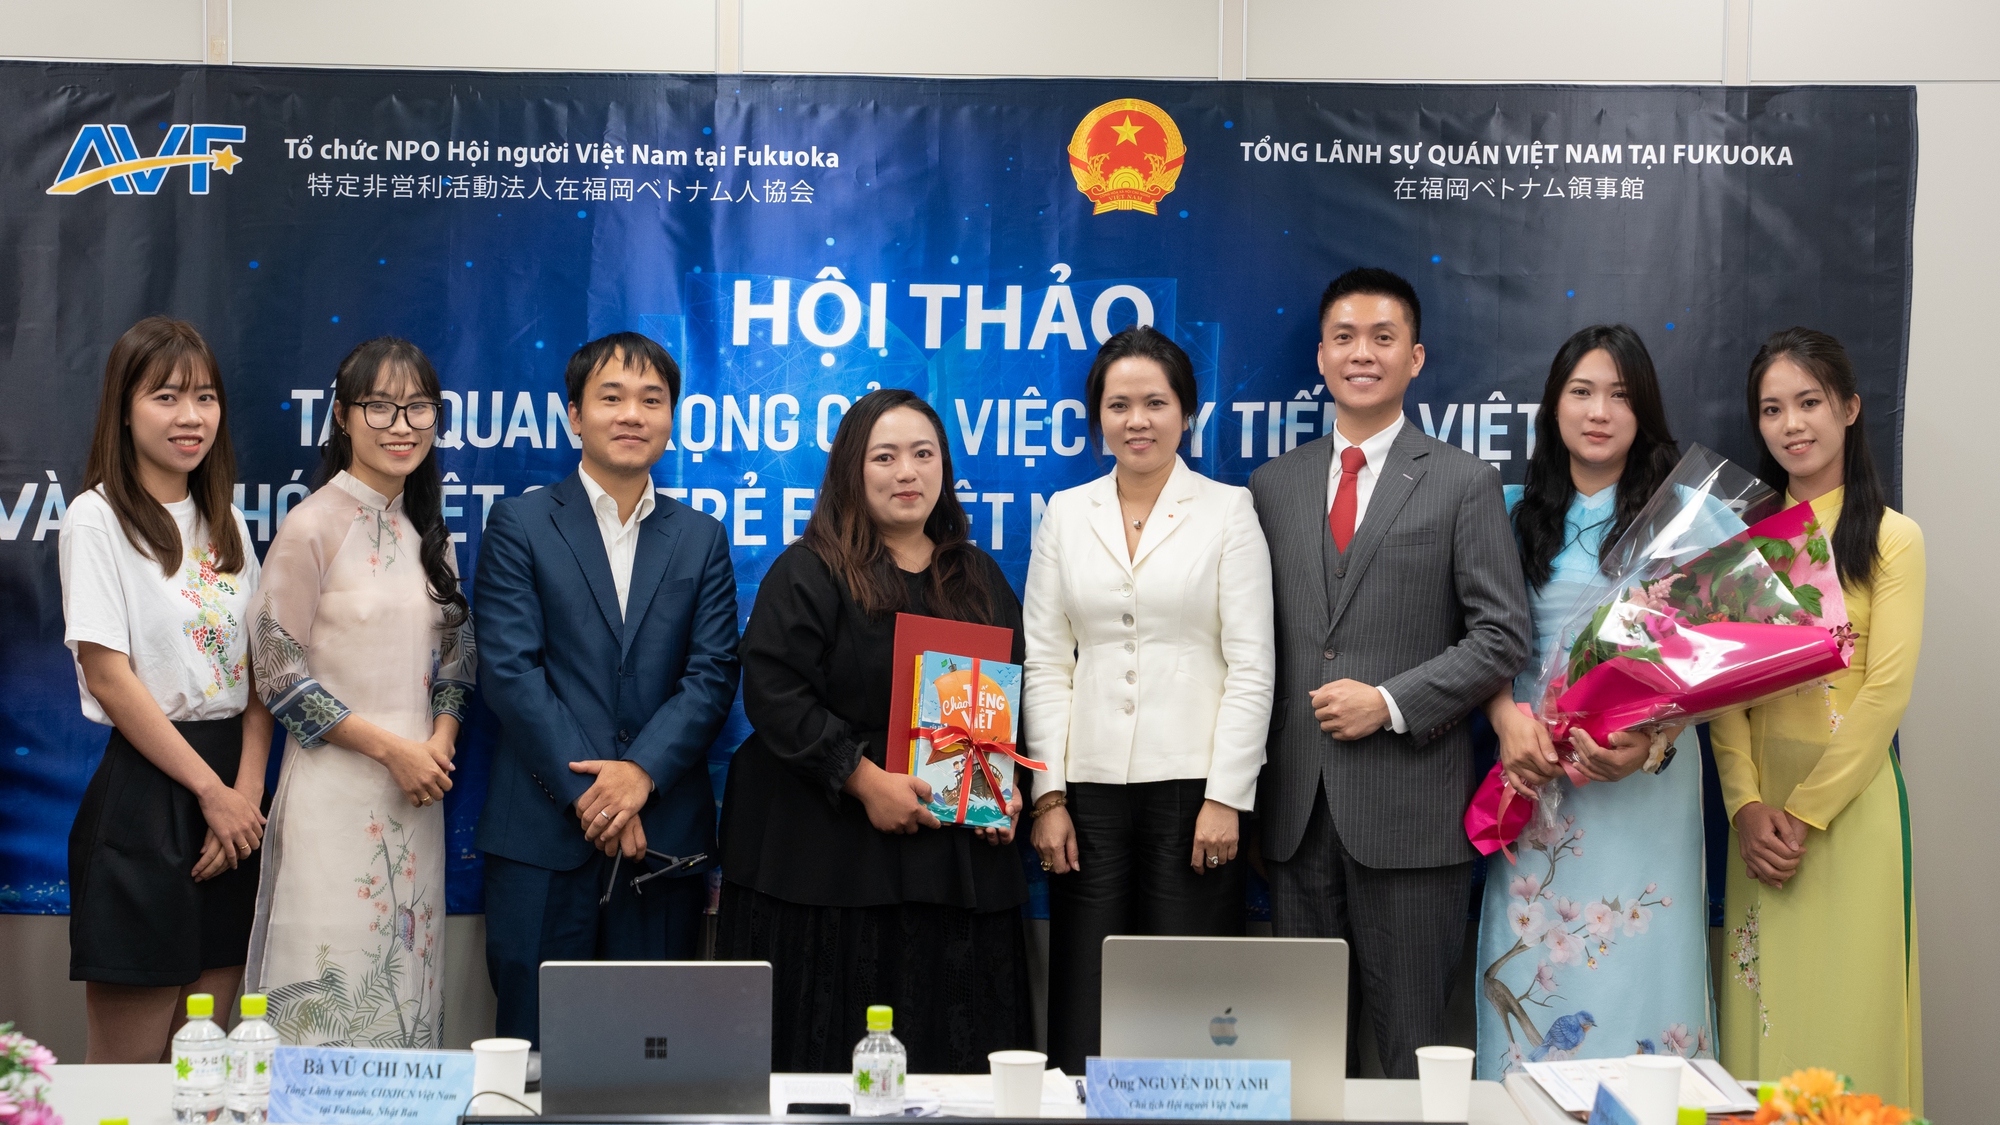 Hội thảo về dạy Tiếng Việt và văn hóa Việt tại Kyushu, Nhật Bản - Ảnh 3.